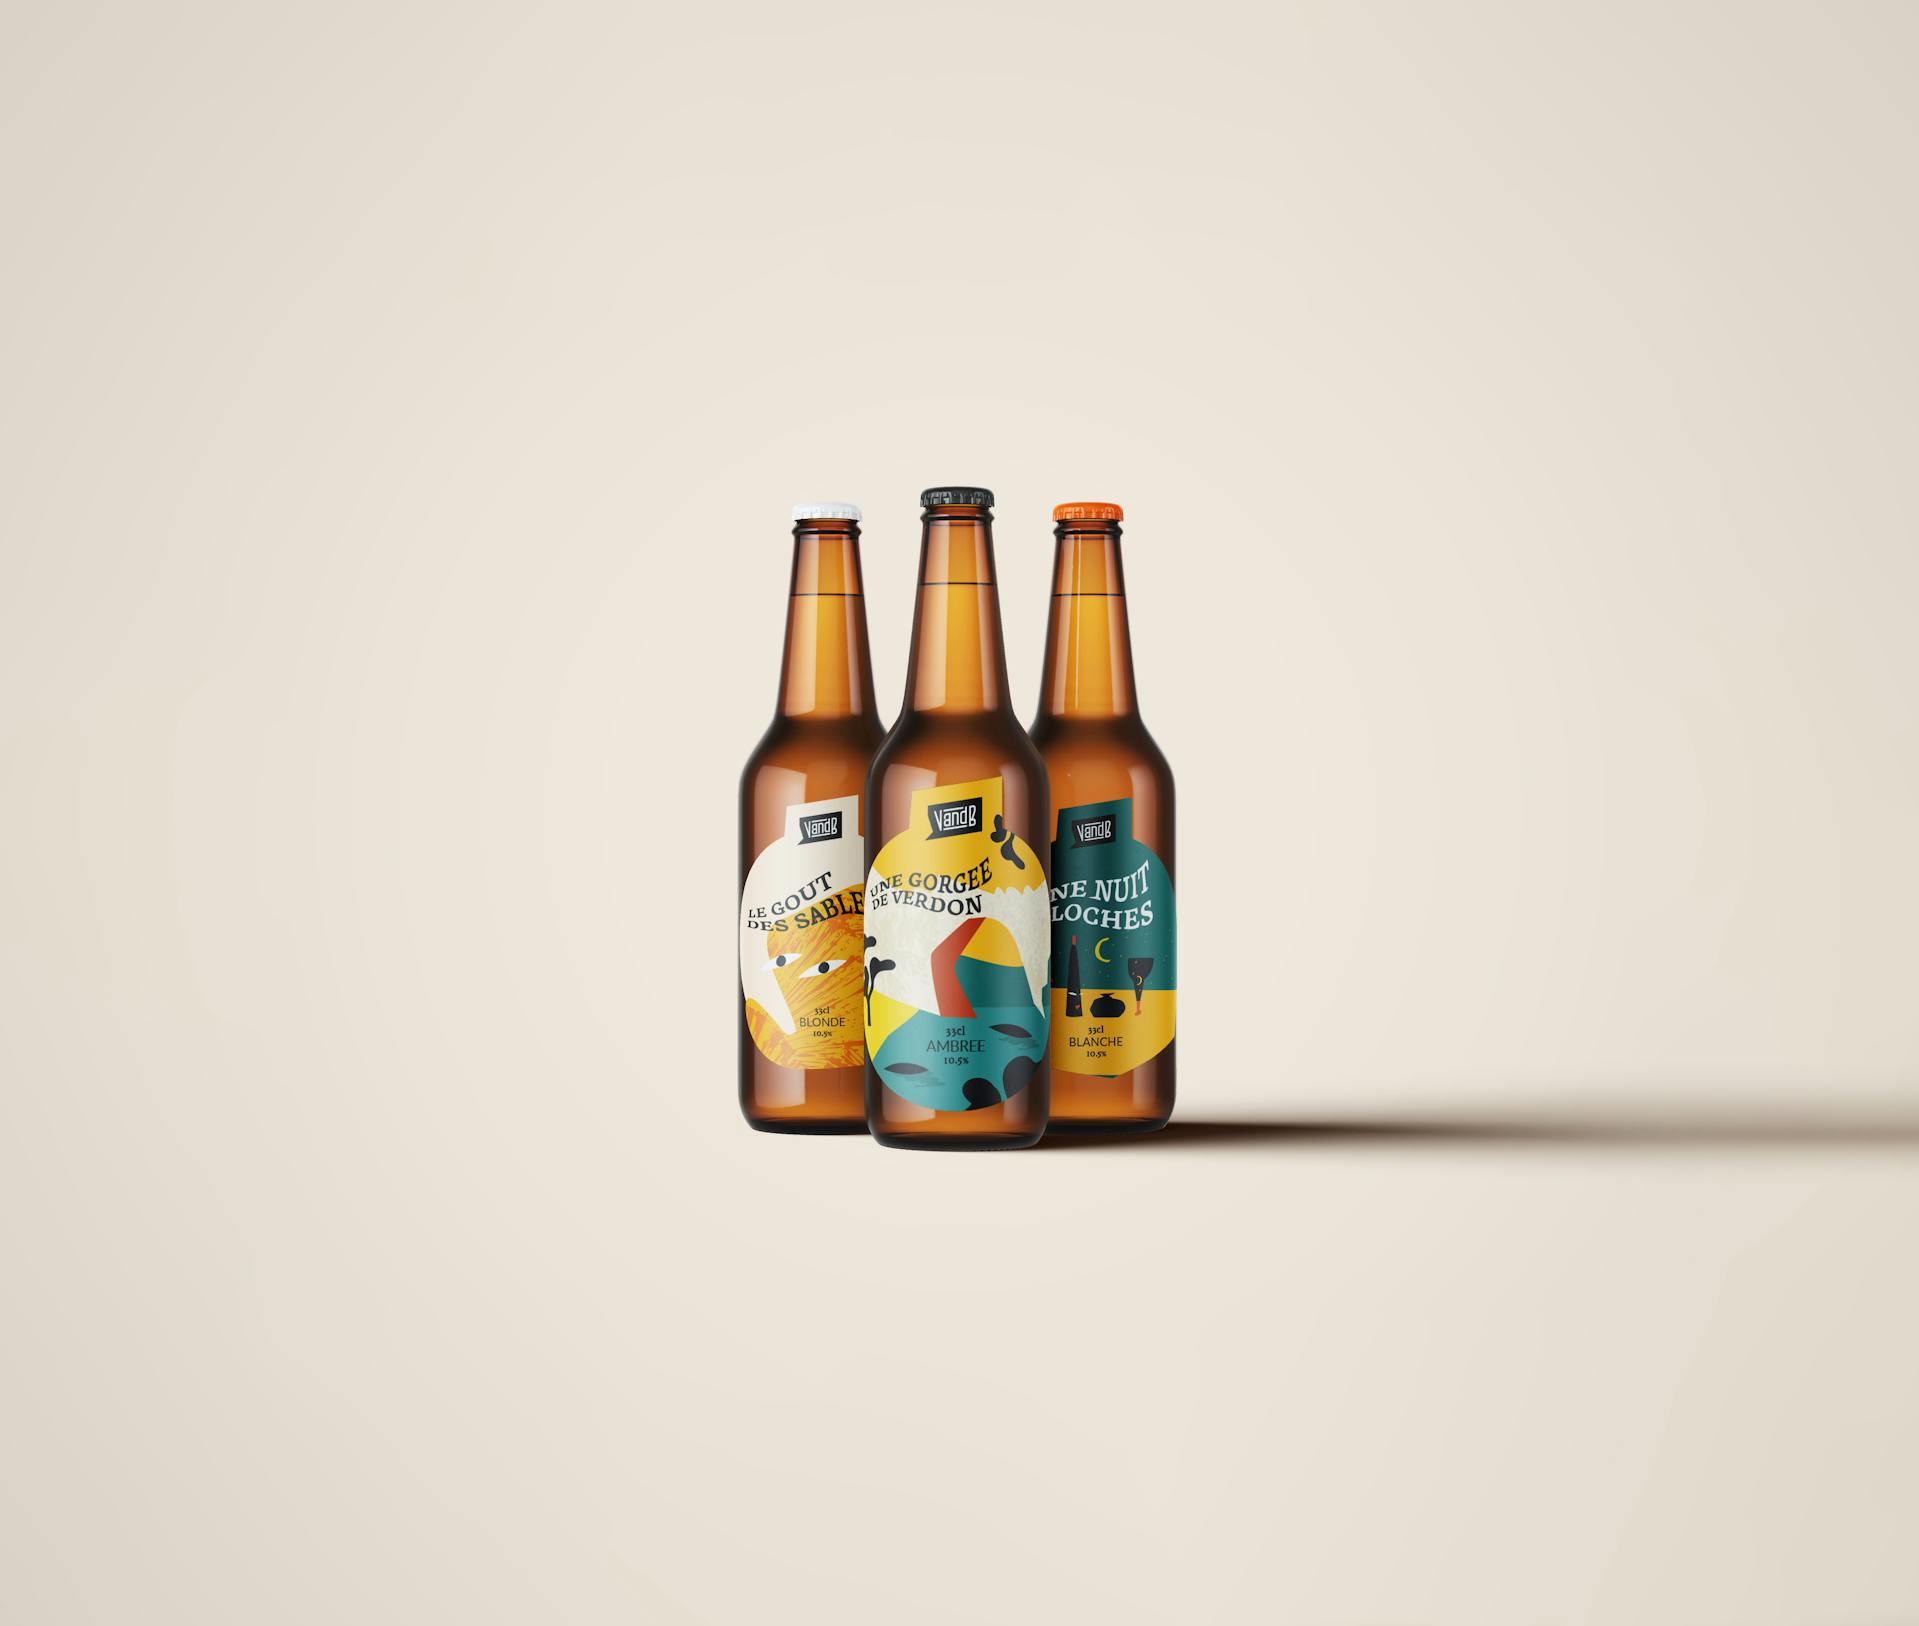 Mockup de bouteilles de bières, inspirées de la nouvelle identité visuelle du groupe V and B, conçue par l'agence de design graphique Studio Katra.